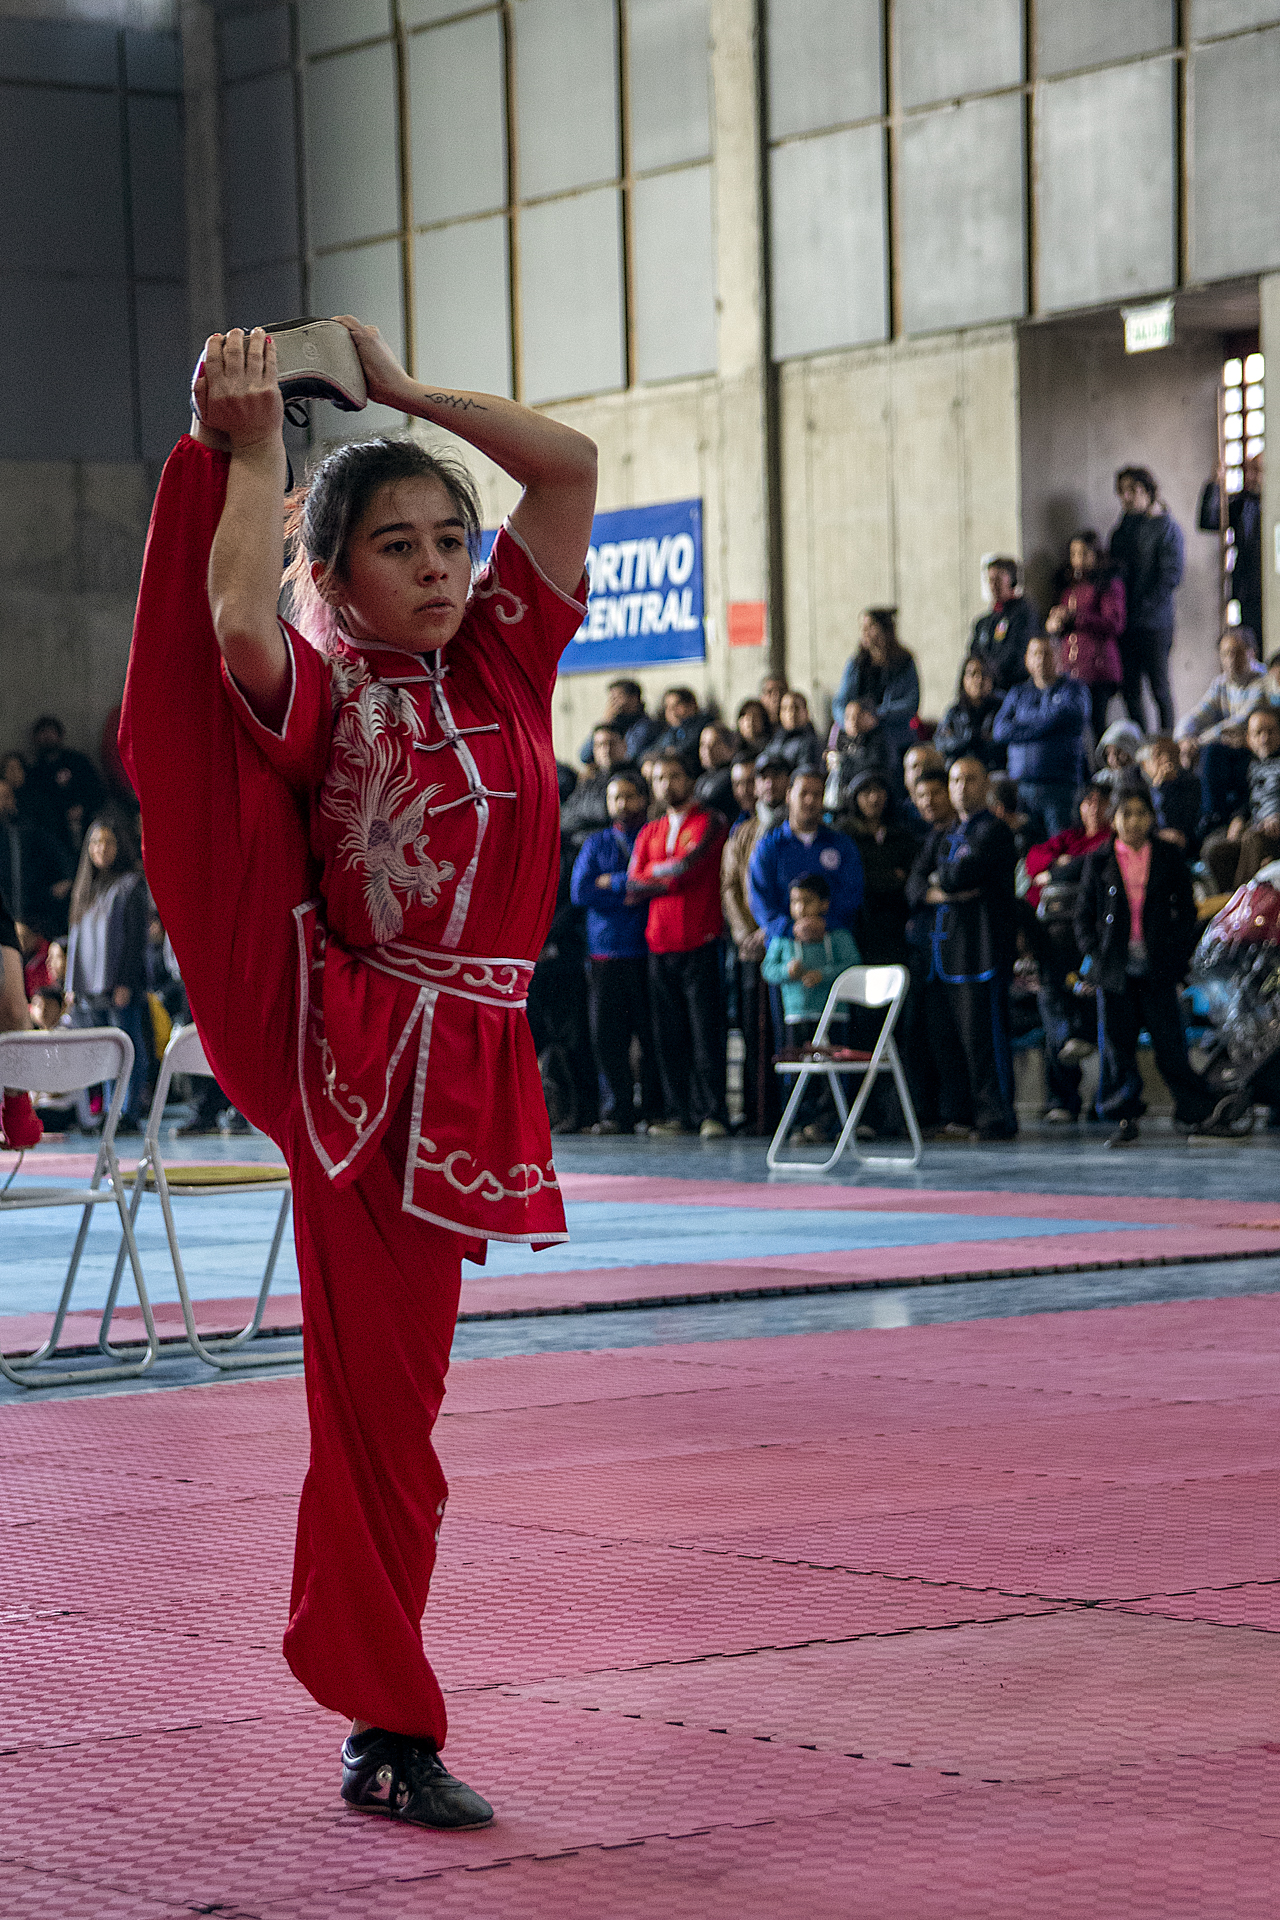 Campeonato Nacional Wushu